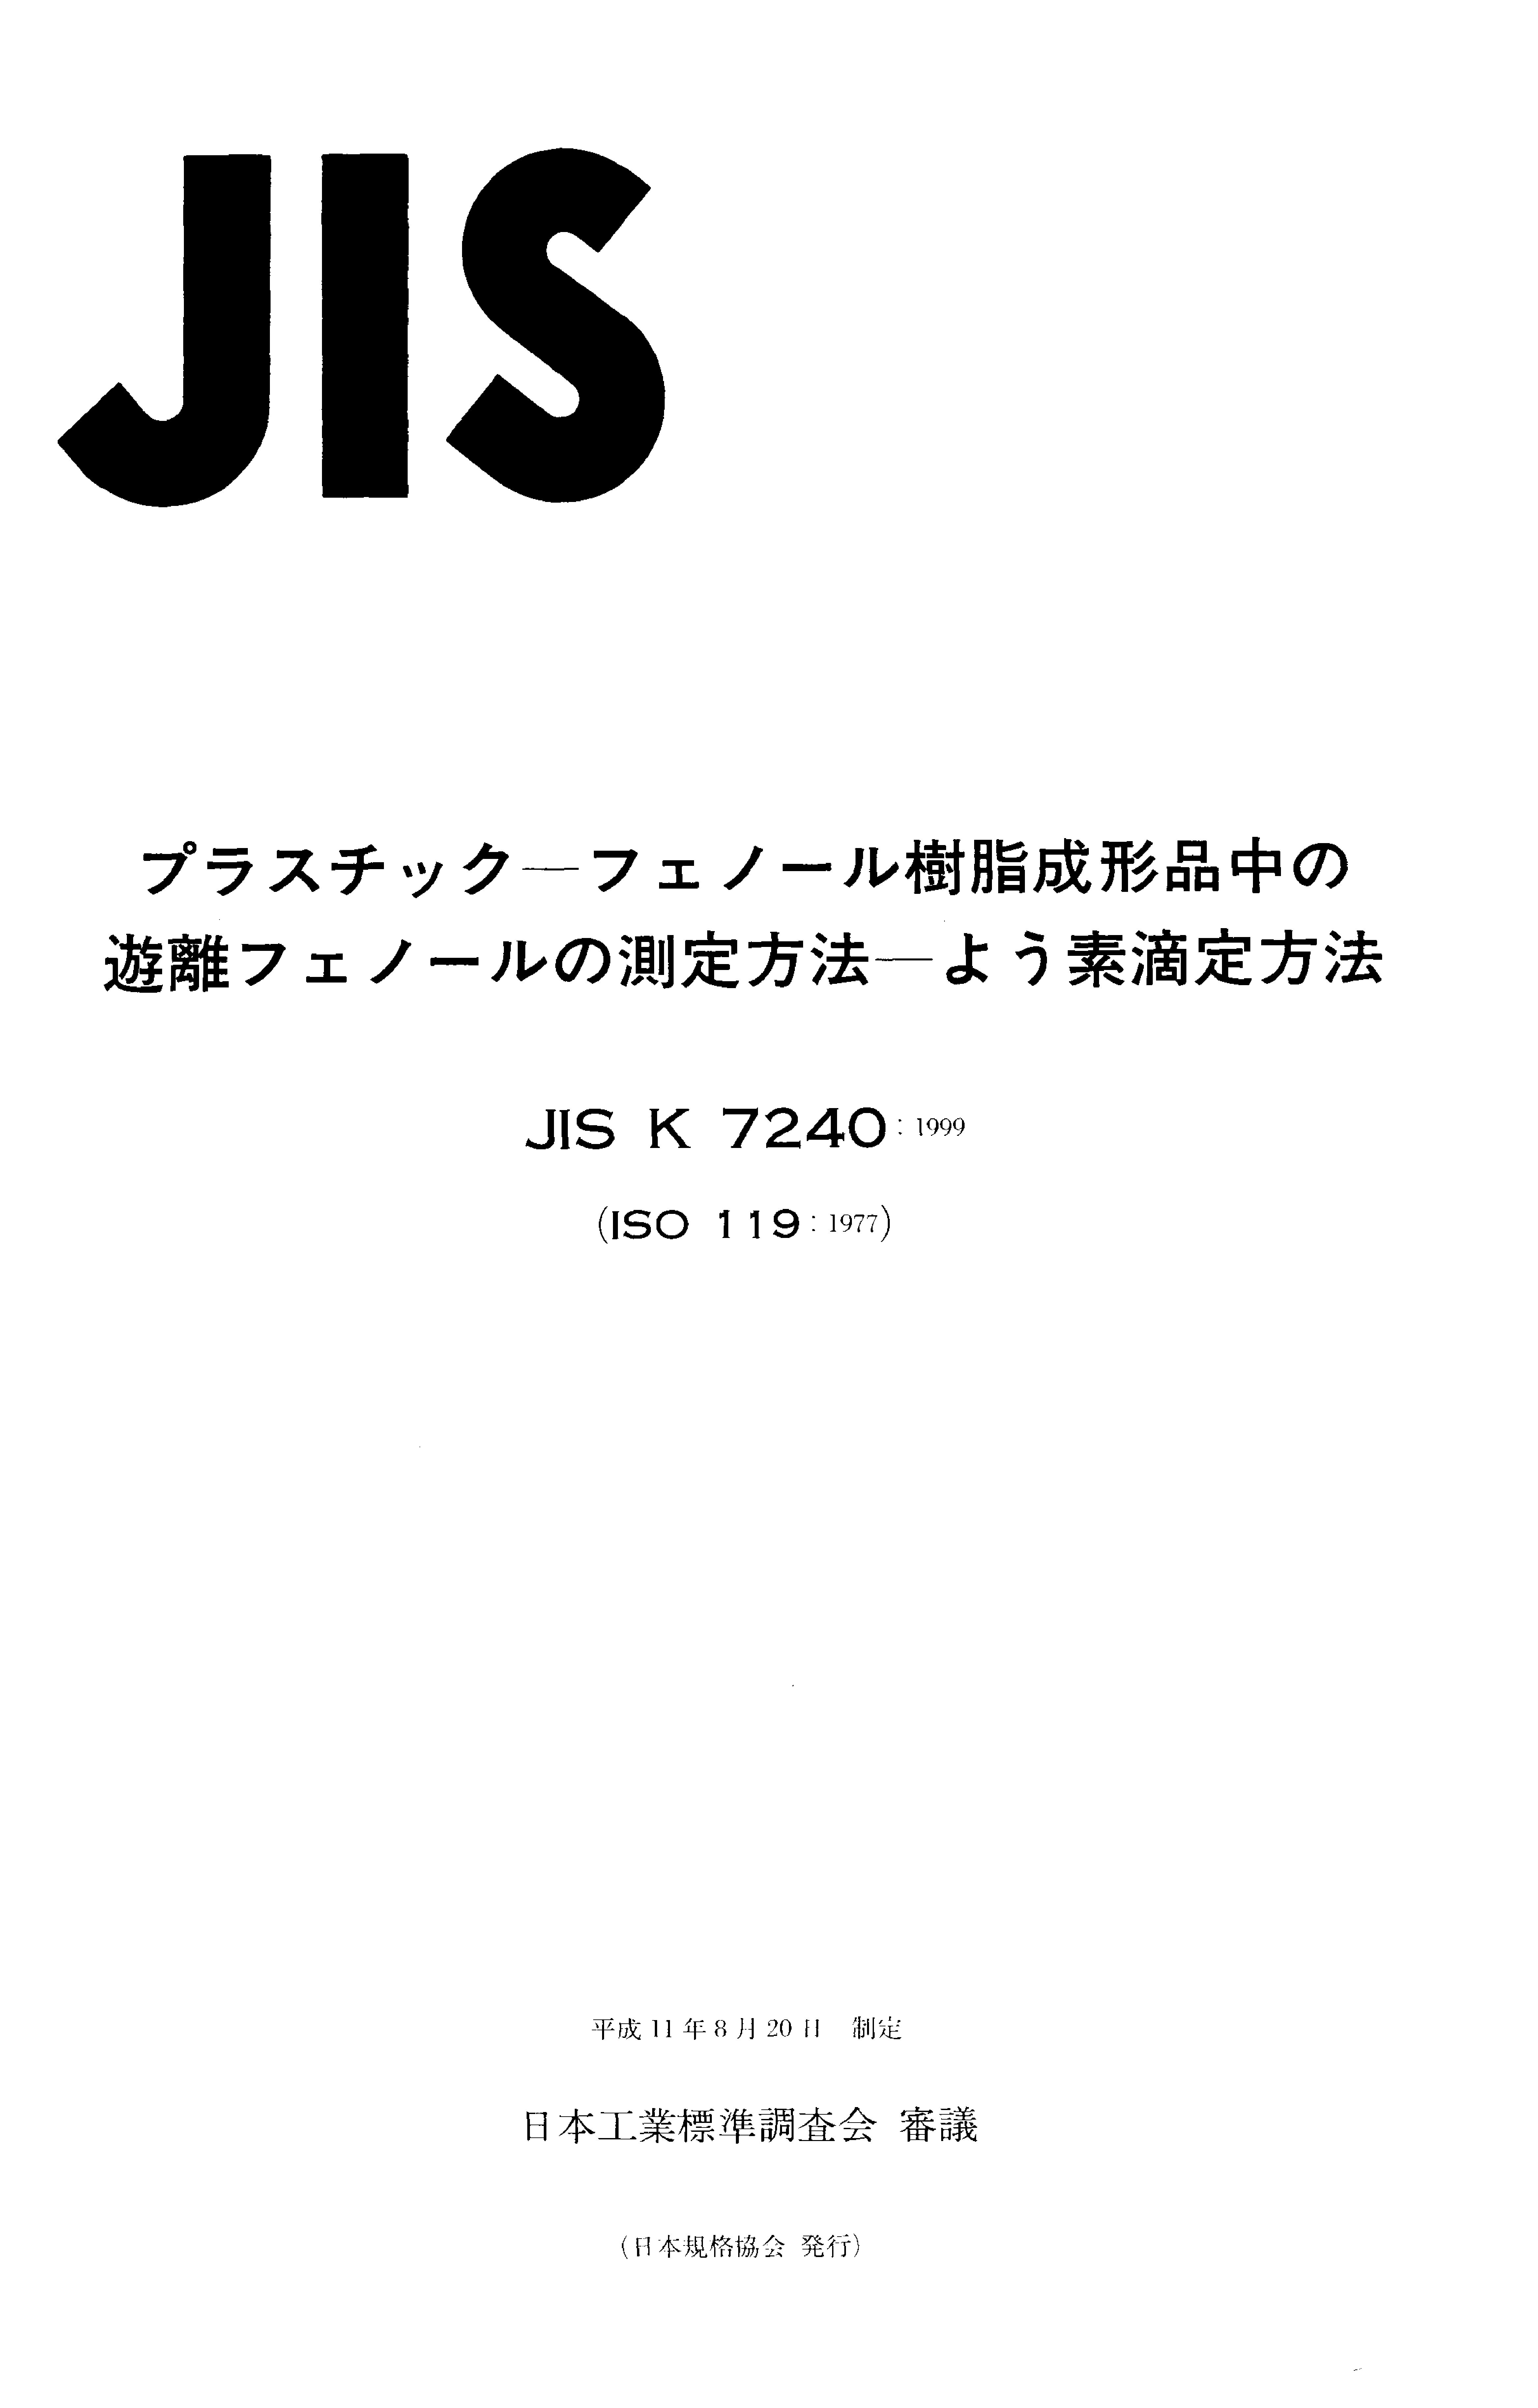 JIS K 7240:1999封面图